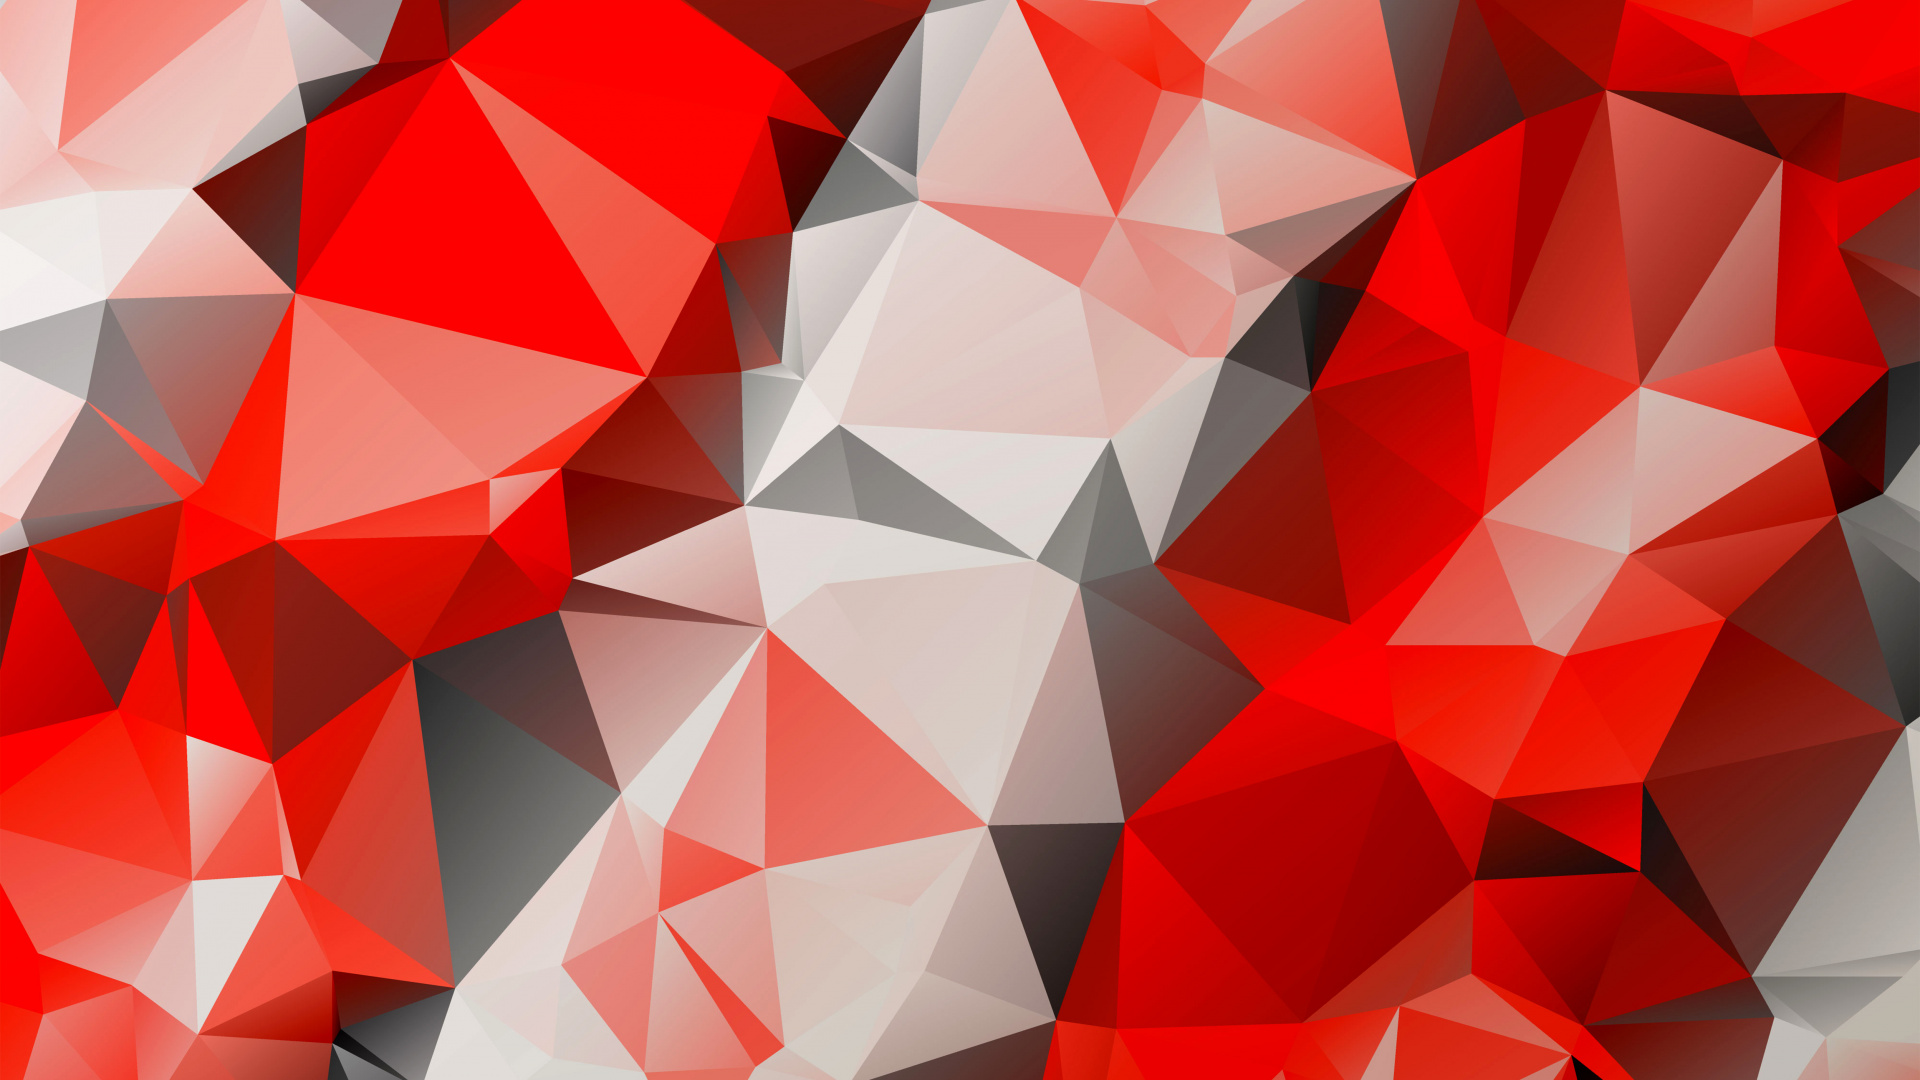 多边形, 红色的, 三角形, 对称, 矢量图形 壁纸 1920x1080 允许